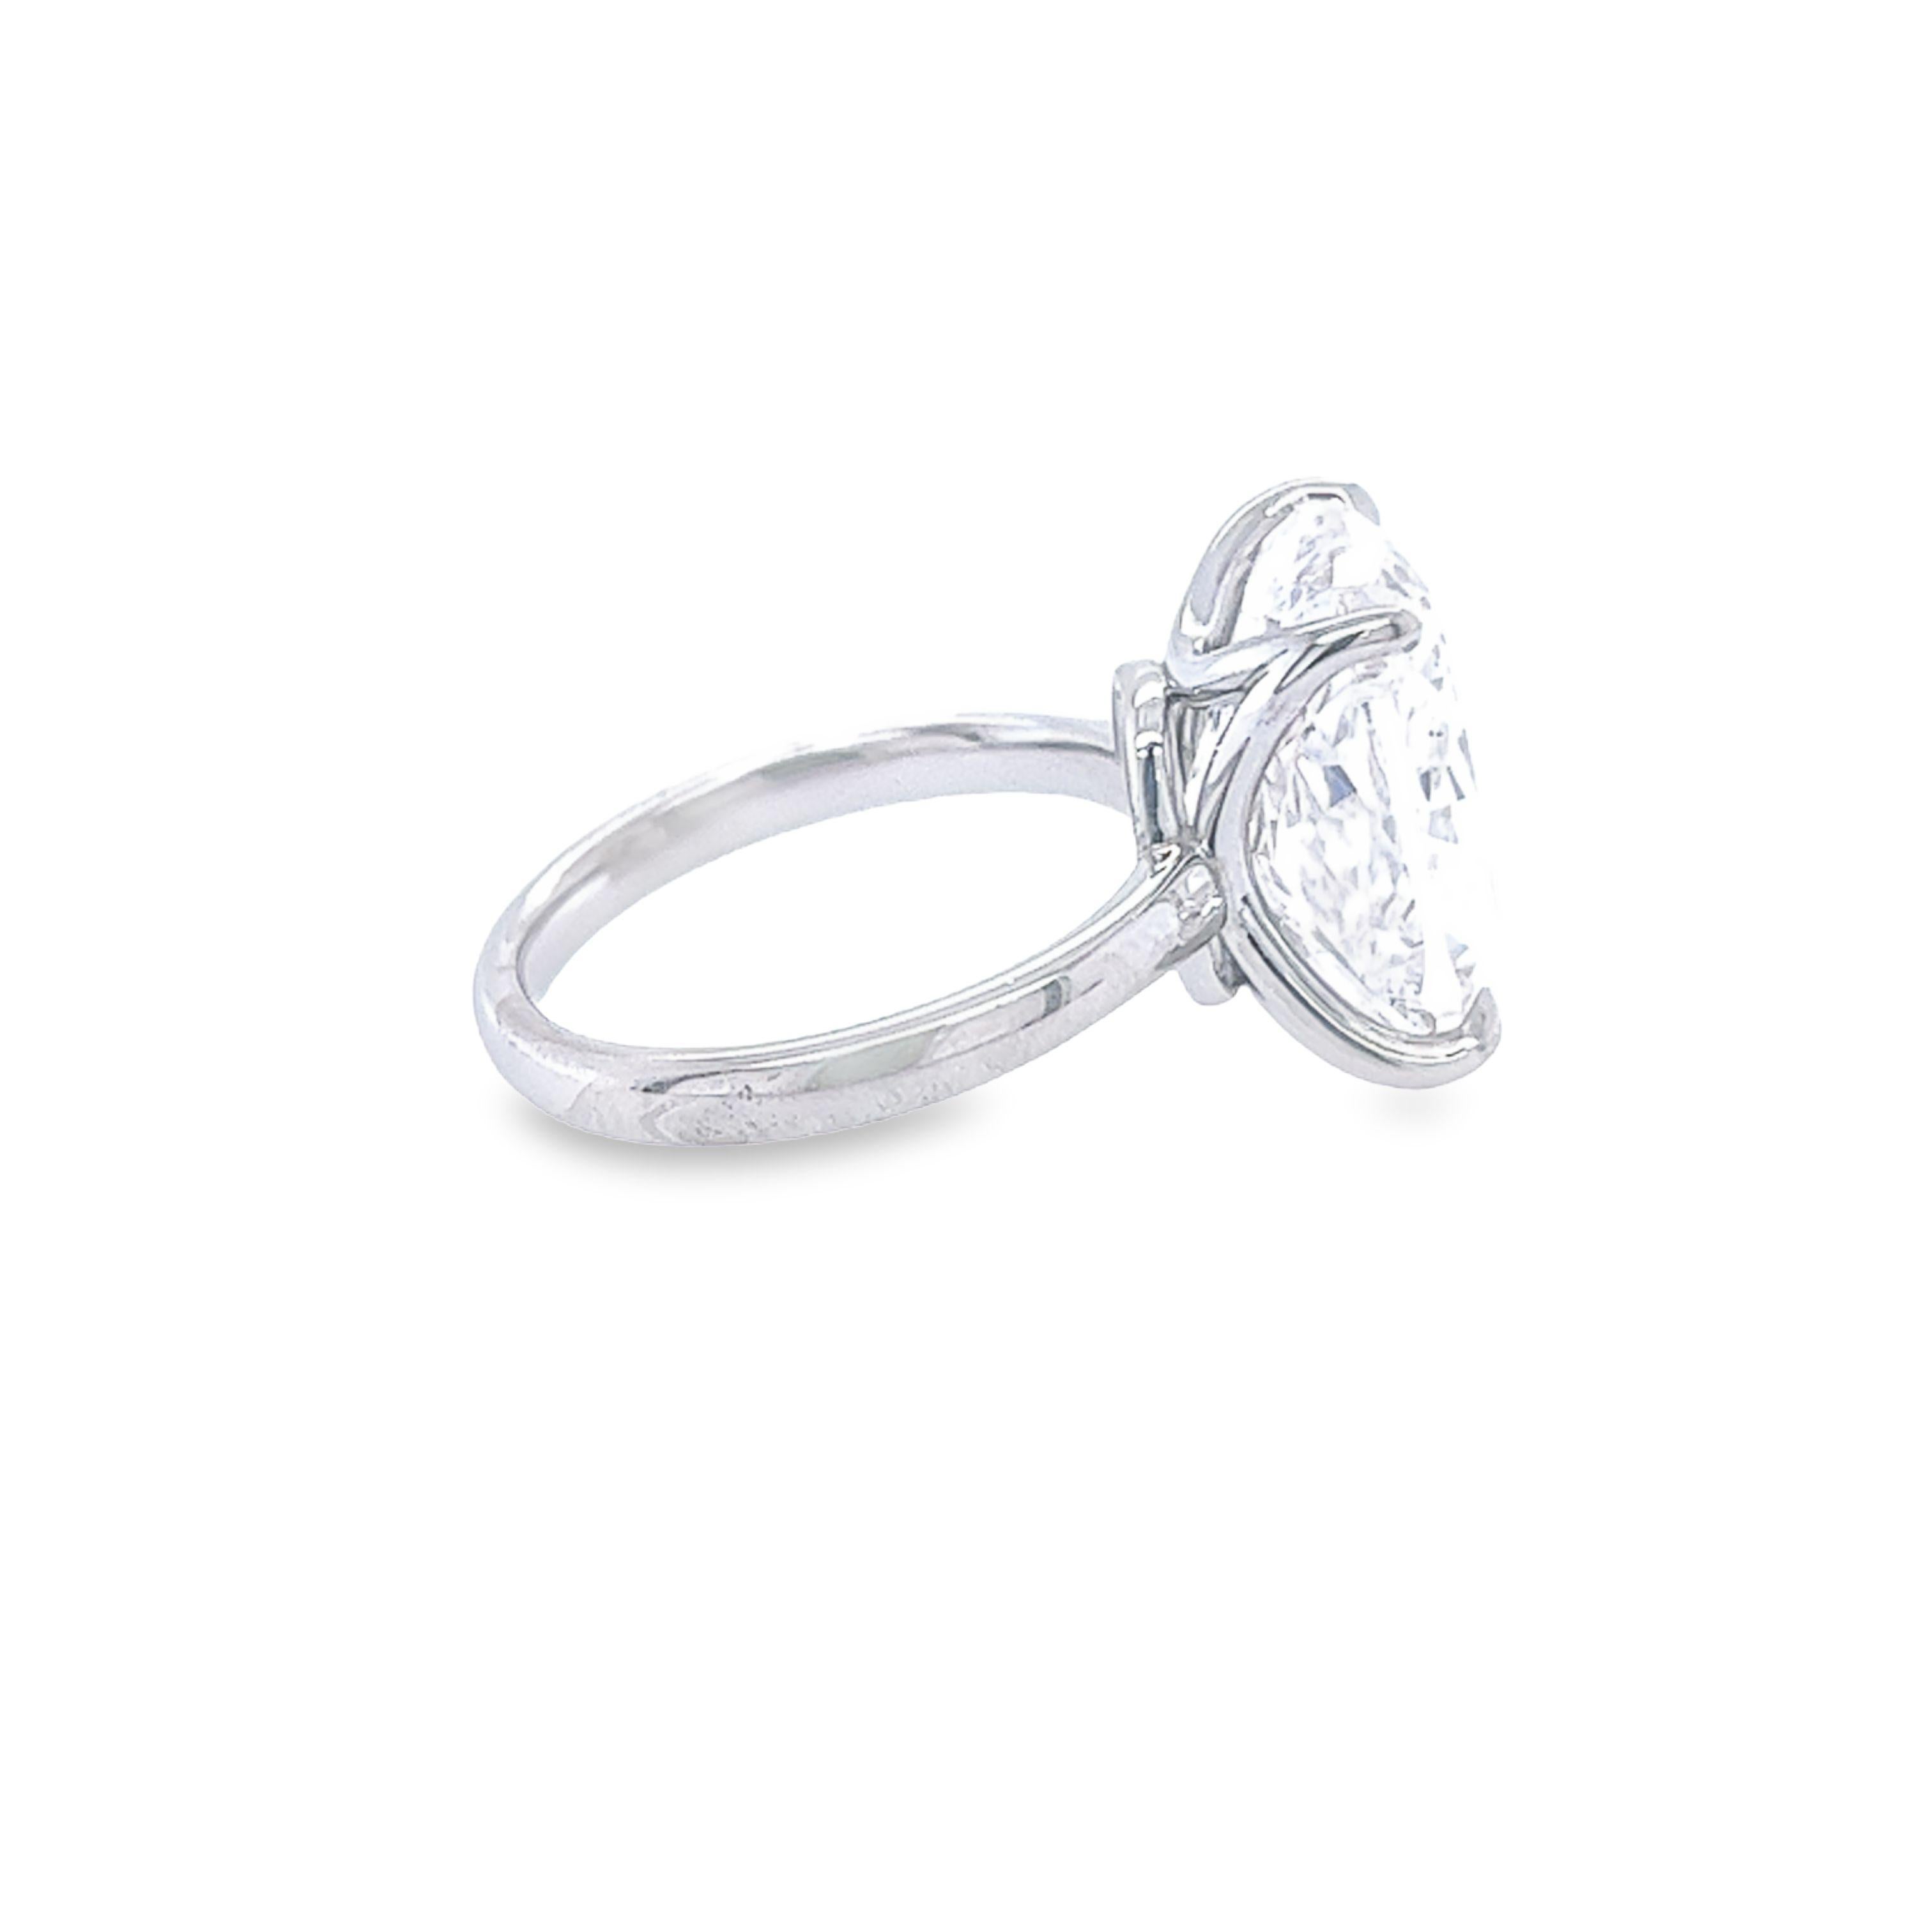 10 carat diamond rings